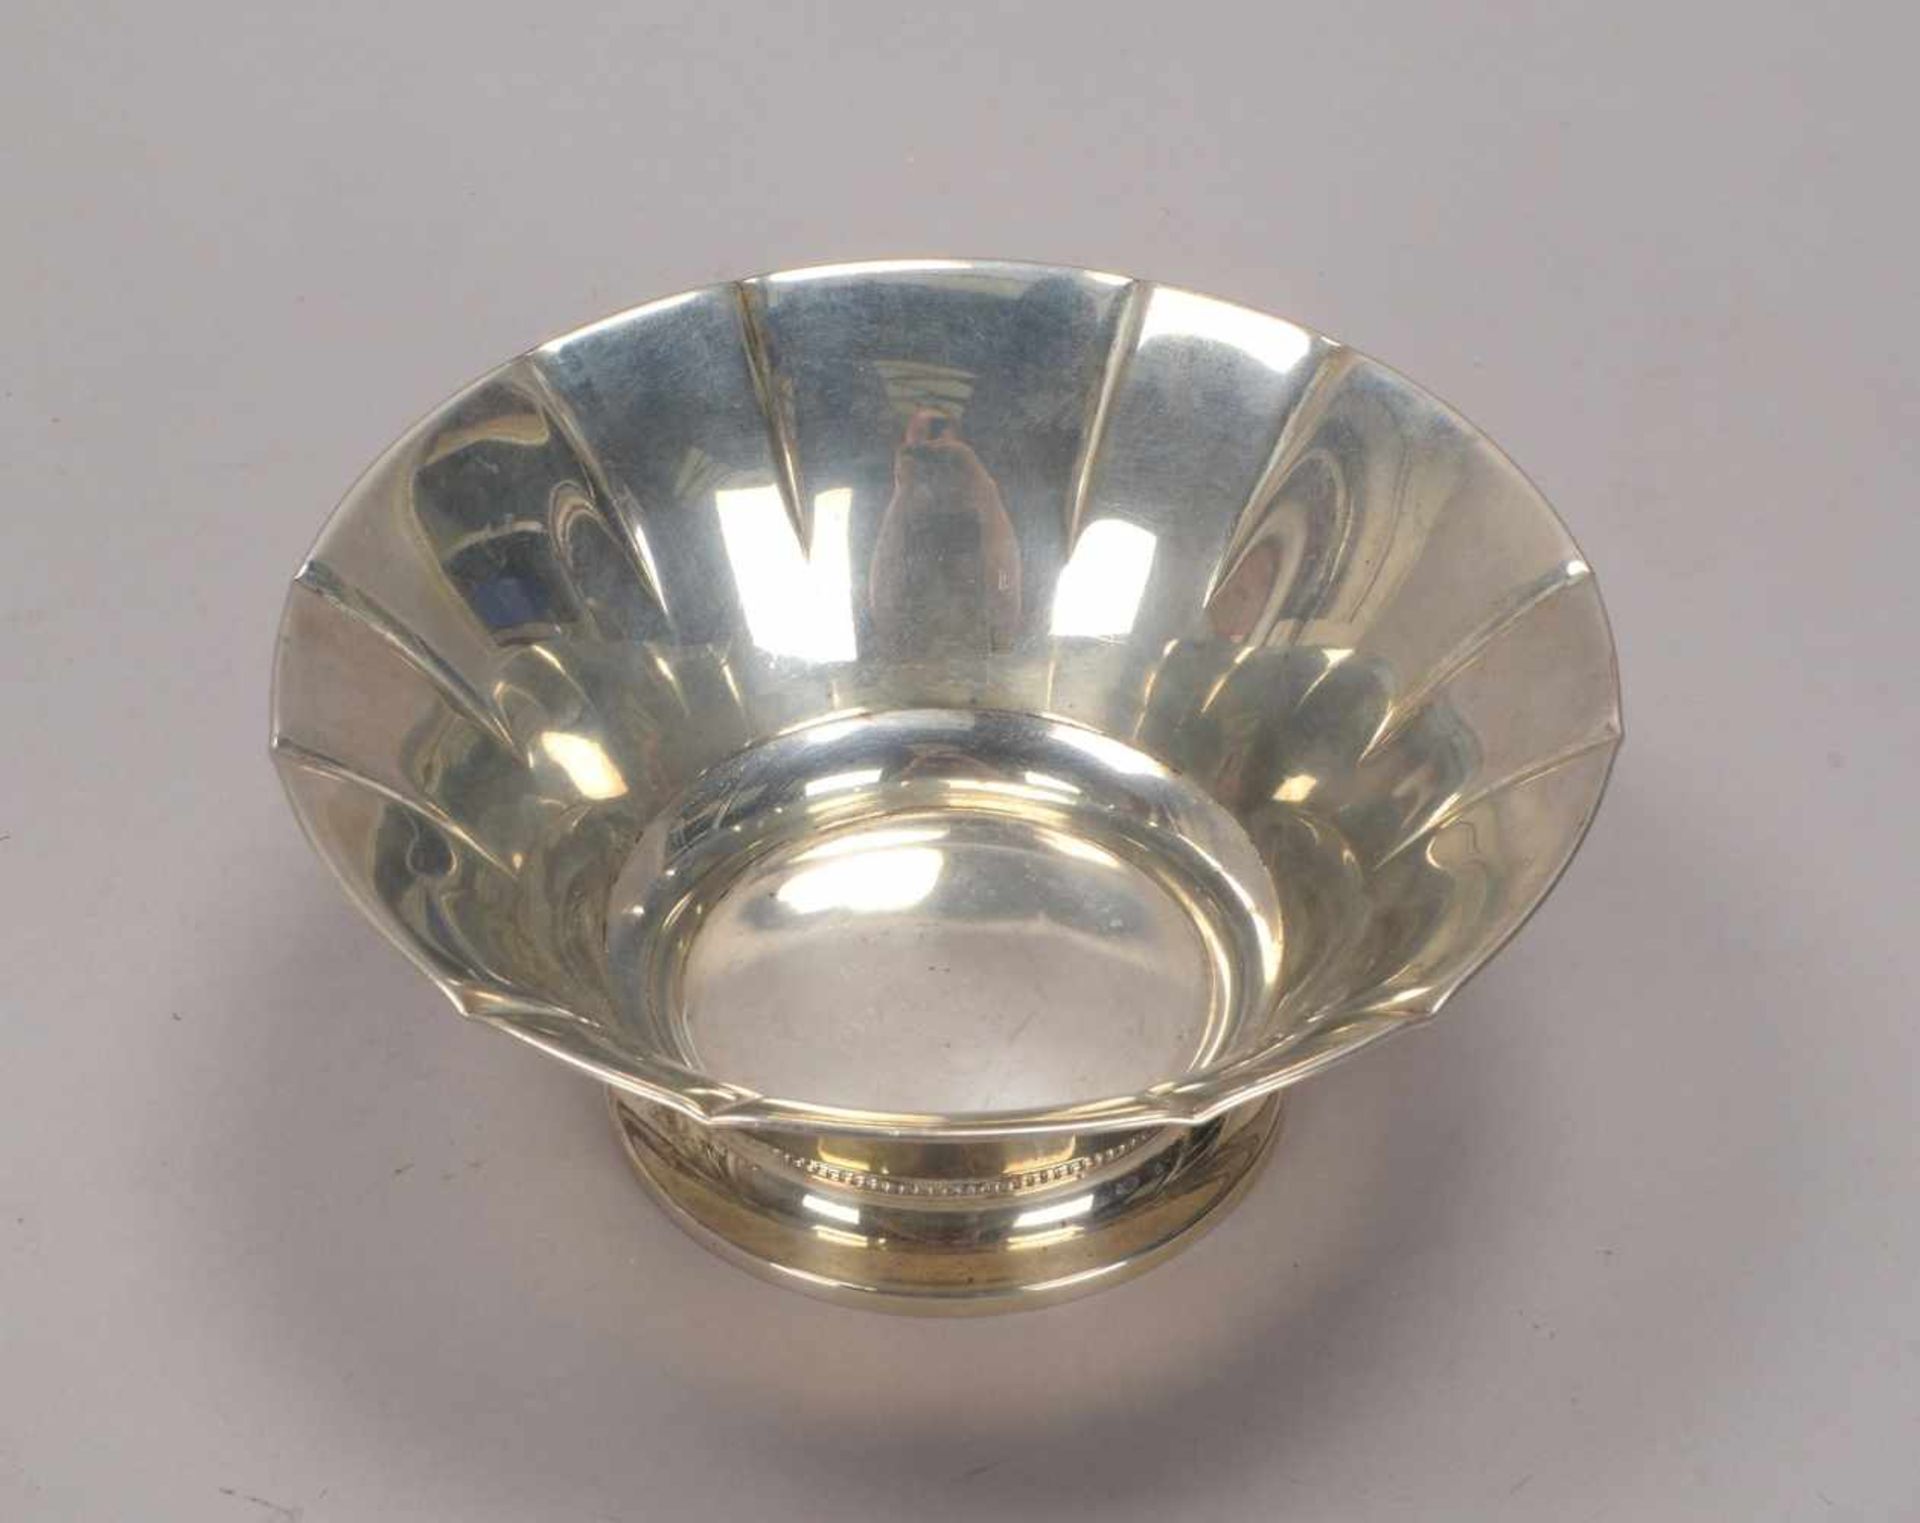 Schale (Schweden), 830 Silber, mehrfach punziert; Höhe 7 cm, Durchmesser Ø 16,5 cm, Gewicht 167 g - Bild 2 aus 3